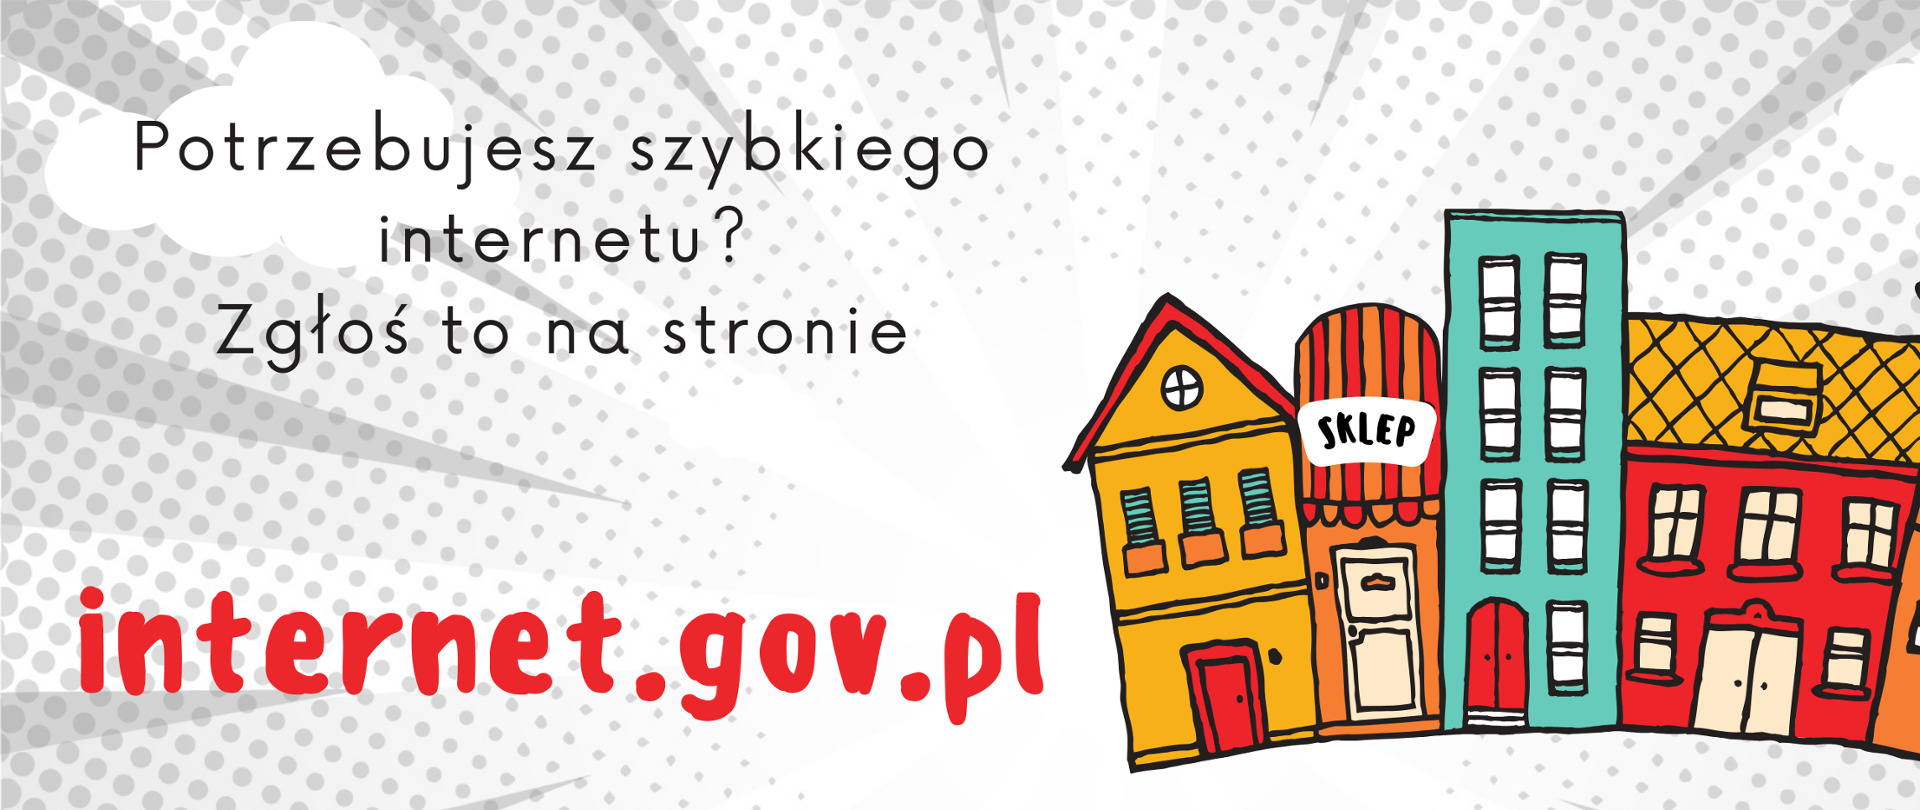 link do strony internet.gov.pl